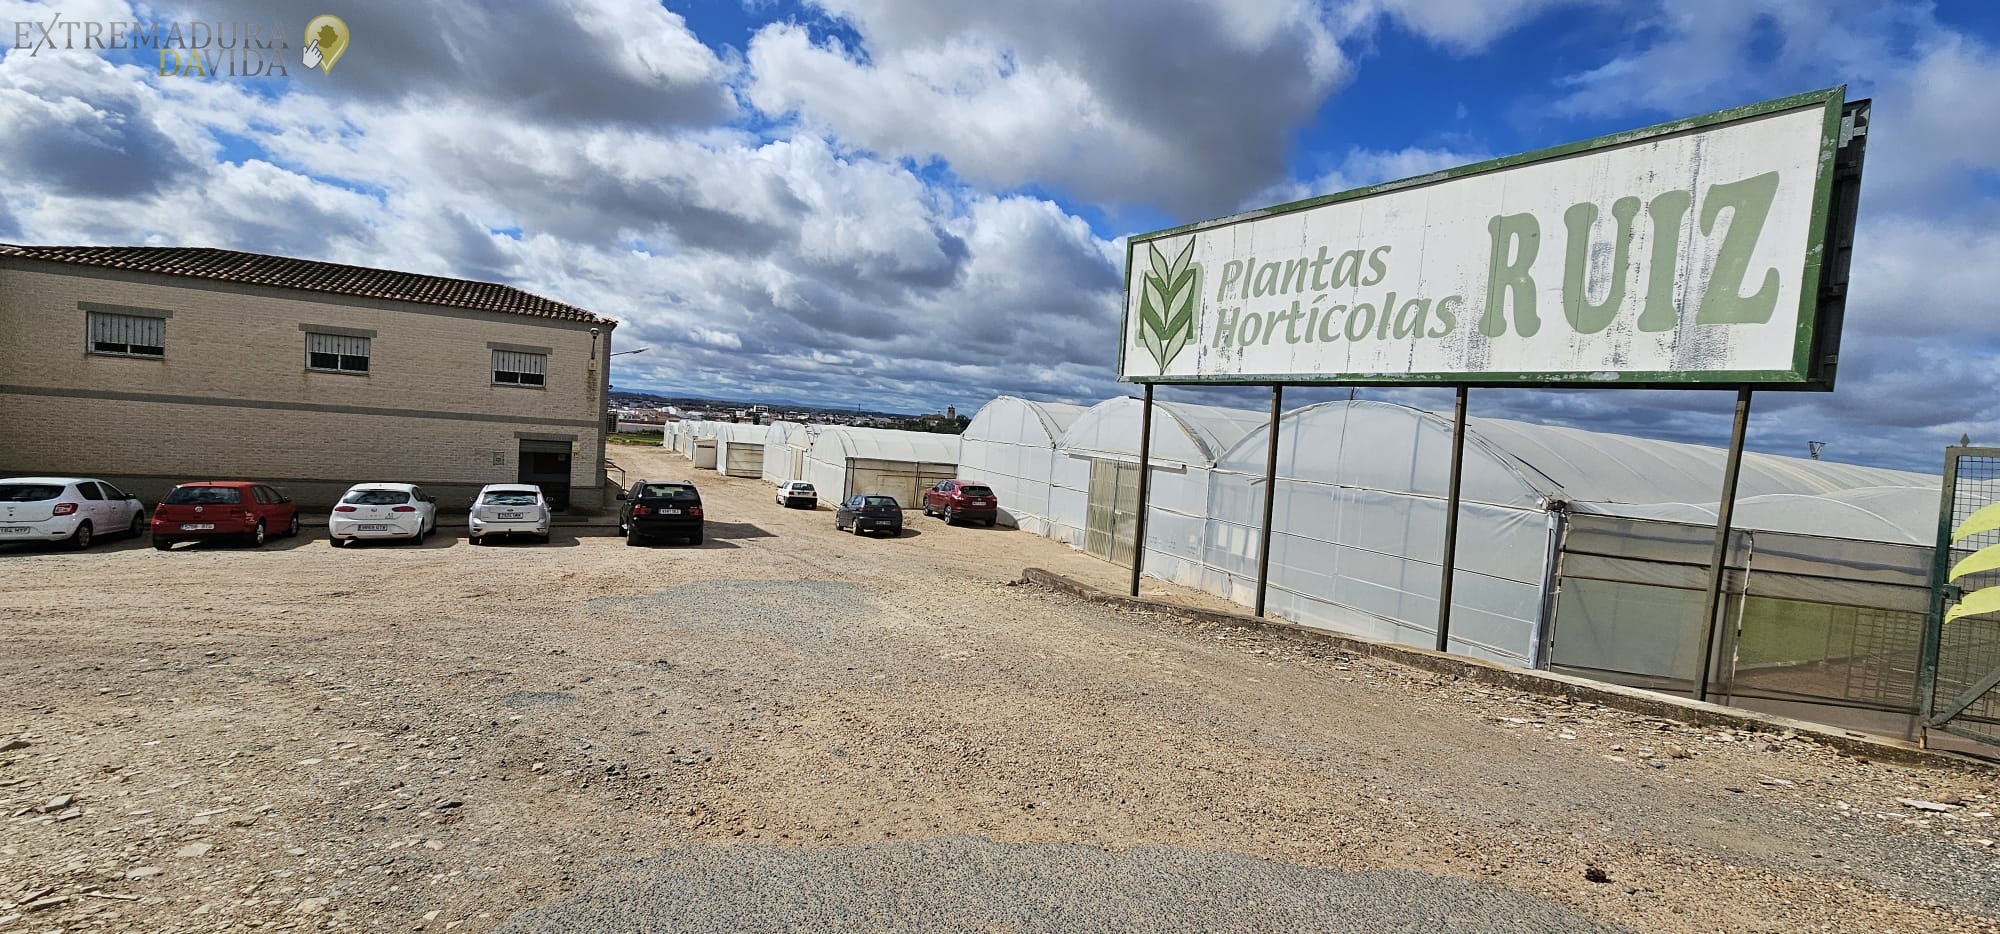 Productores de plantones en Extremadura España Semilleros en Montijo Ruiz